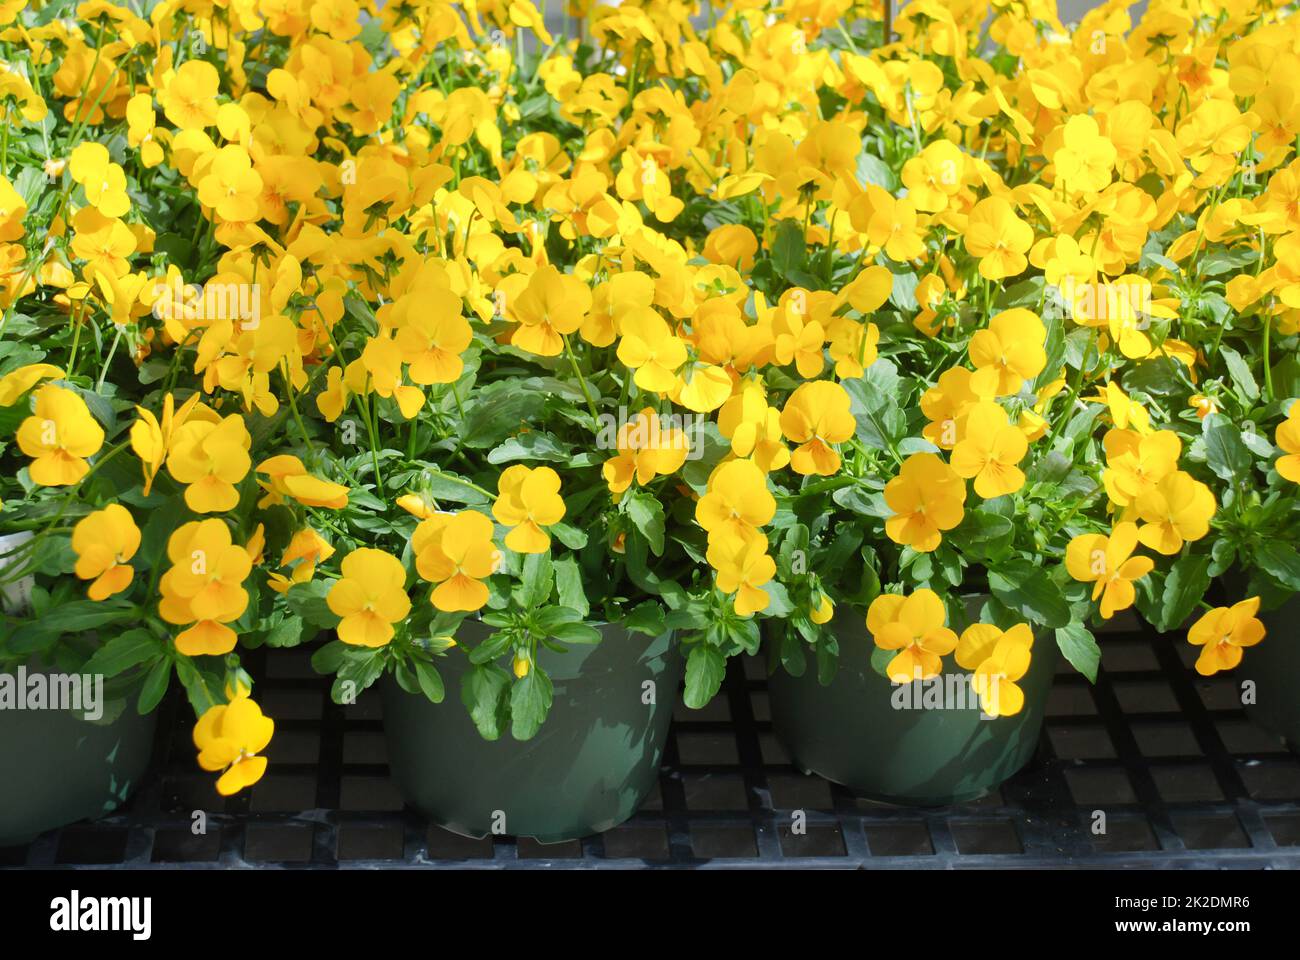 Pansies de fleurs jaunes et violettes claires pour une fleur en pansy colorée Banque D'Images